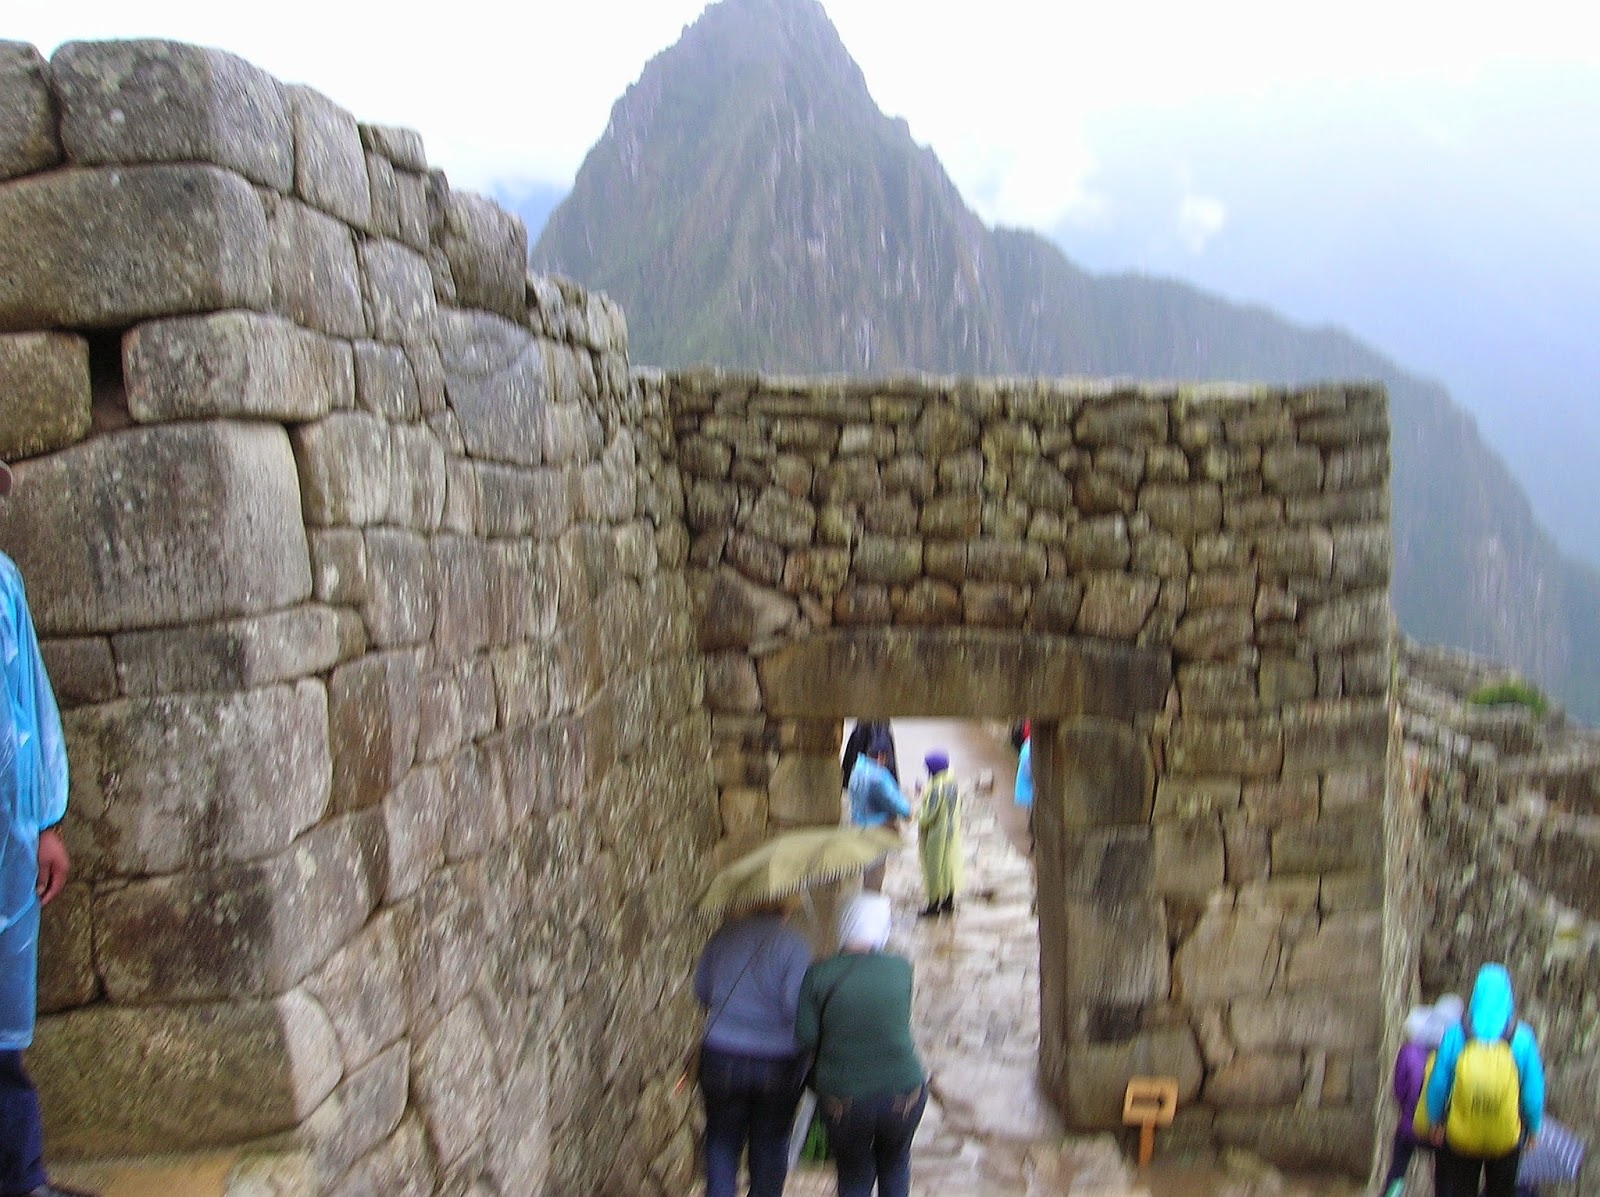 Lluvia en Machu Picchu Perú, La vuelta al mundo de Asun y Ricardo, round the world, mundoporlibre.com